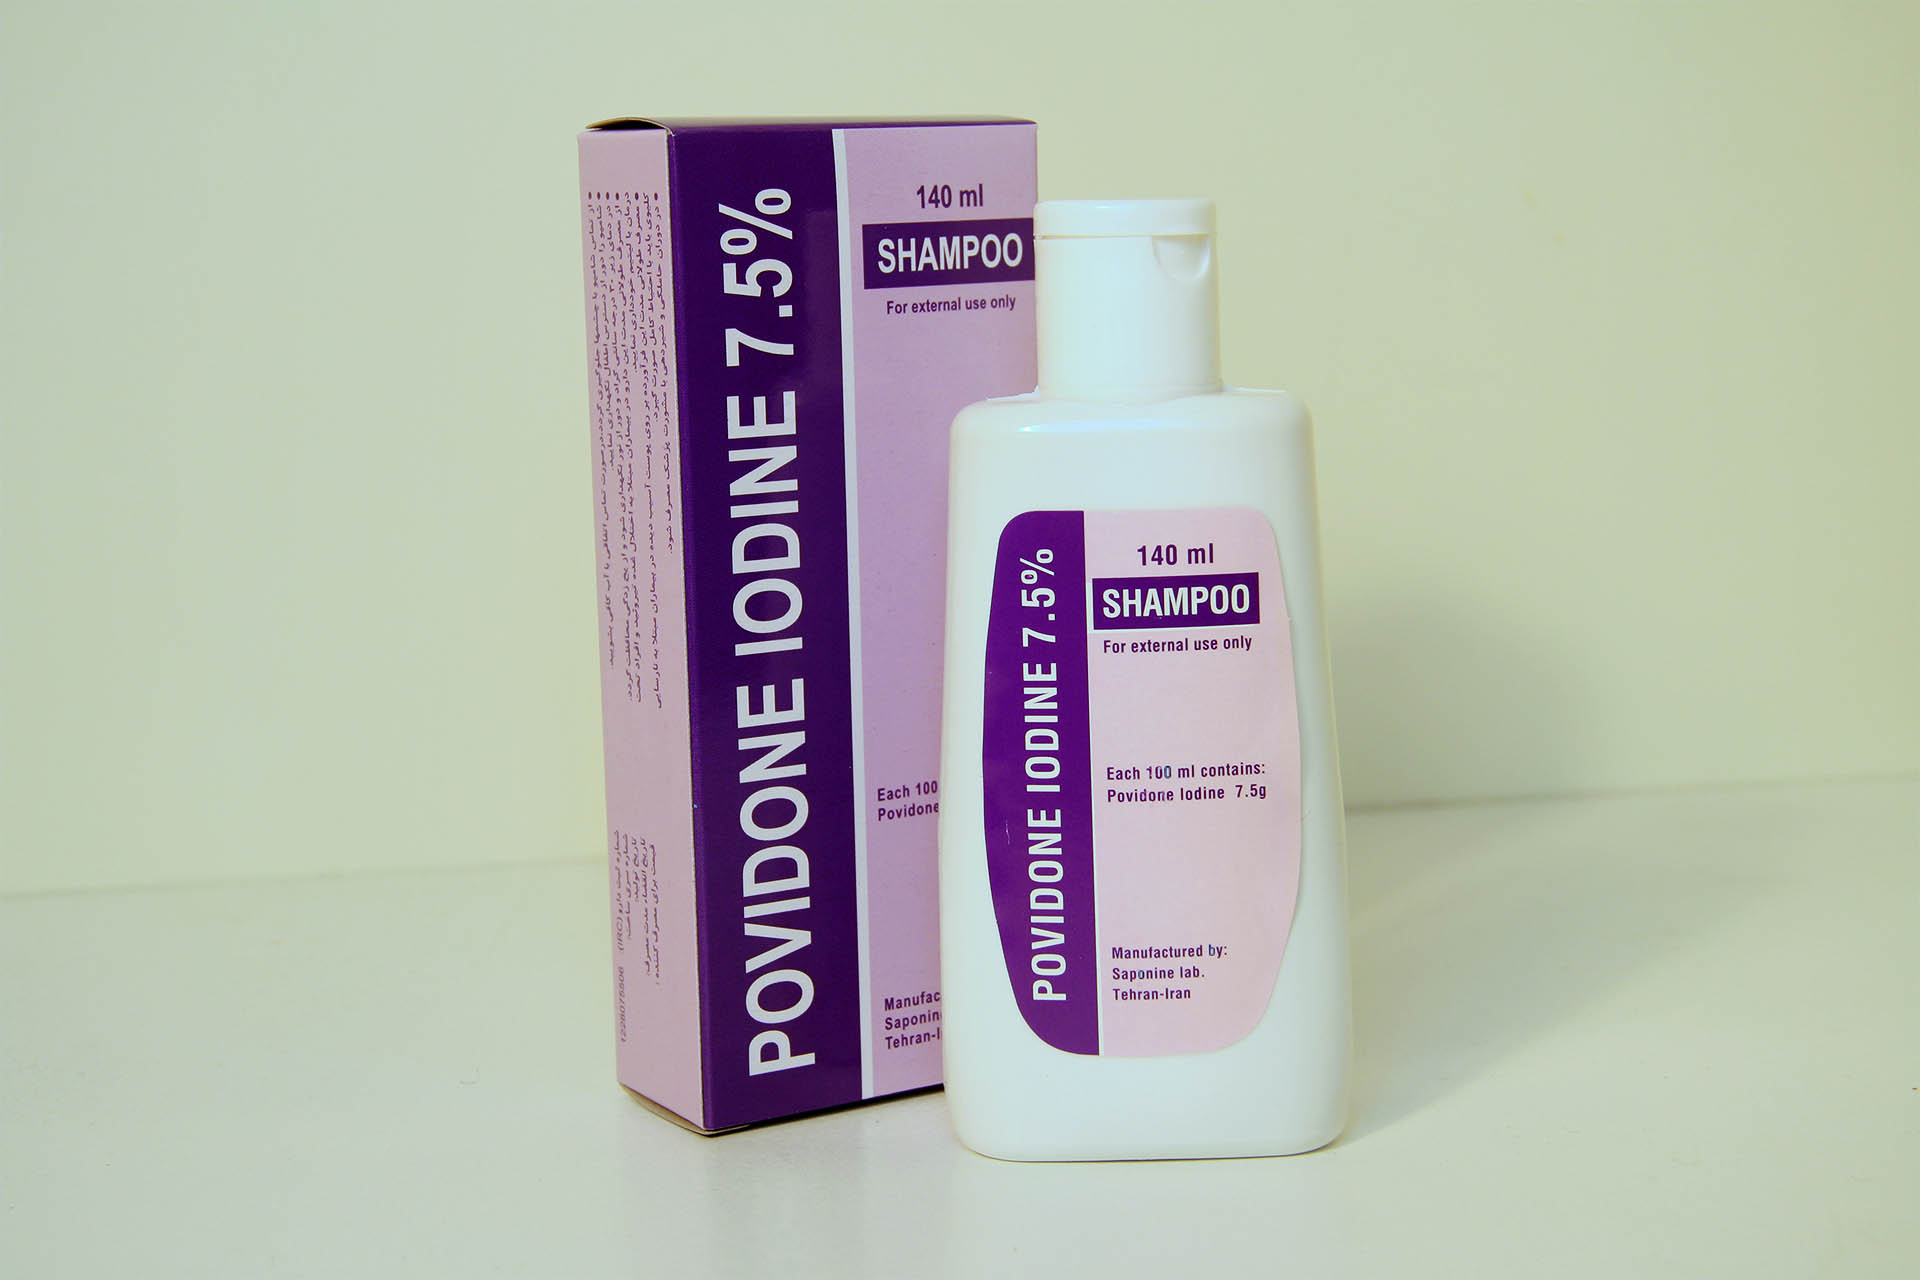 Povidone Iodine 7.5% Shampoo